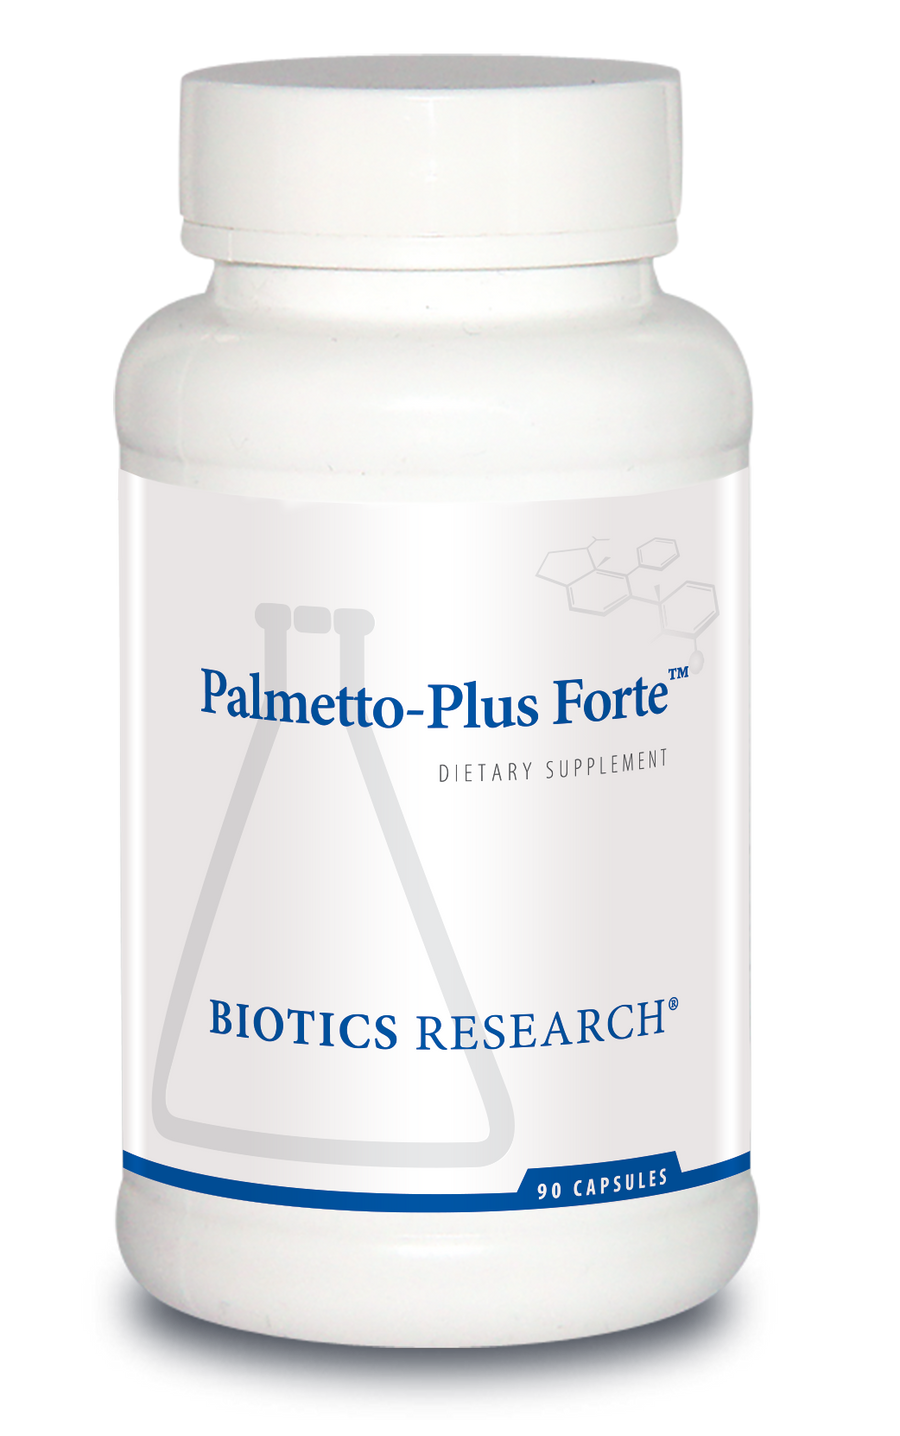 Palmetto-Plus Forte™